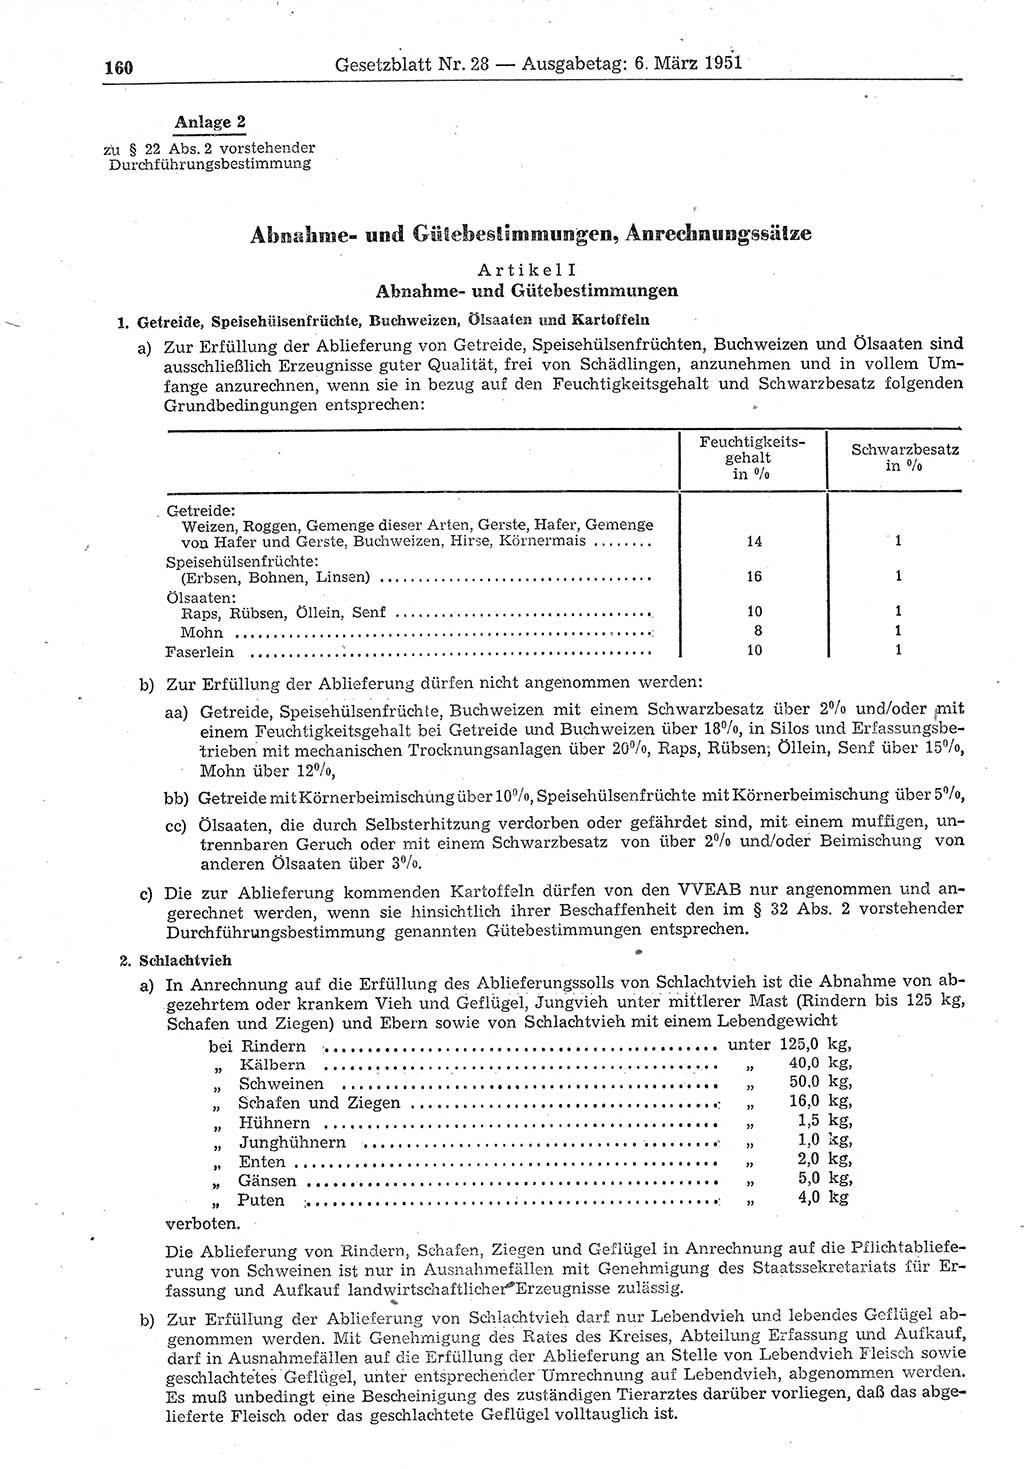 Gesetzblatt (GBl.) der Deutschen Demokratischen Republik (DDR) 1951, Seite 160 (GBl. DDR 1951, S. 160)